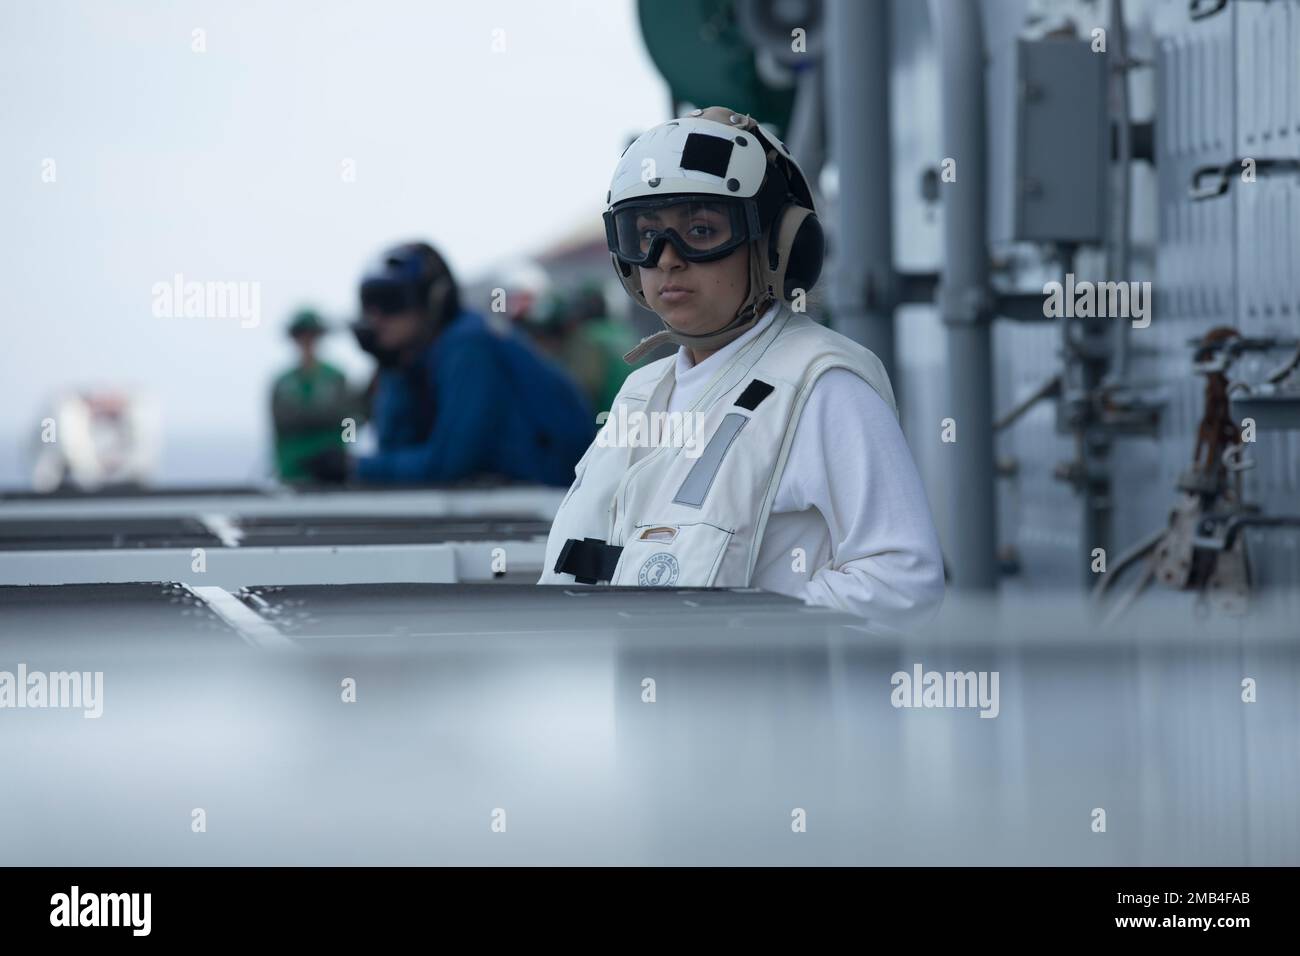 STATI UNITI Il Navy Hospitalman Kathrine Palacio osserva le operazioni di volo a bordo della nave d'assalto anfibio USS Tripoli (LHA 7), in corso, il 11 giugno 2022. Il carrier anfibio USS Tripoli (LHA 7) sta conducendo operazioni di routine all'interno della flotta degli Stati Uniti 7th. Foto Stock